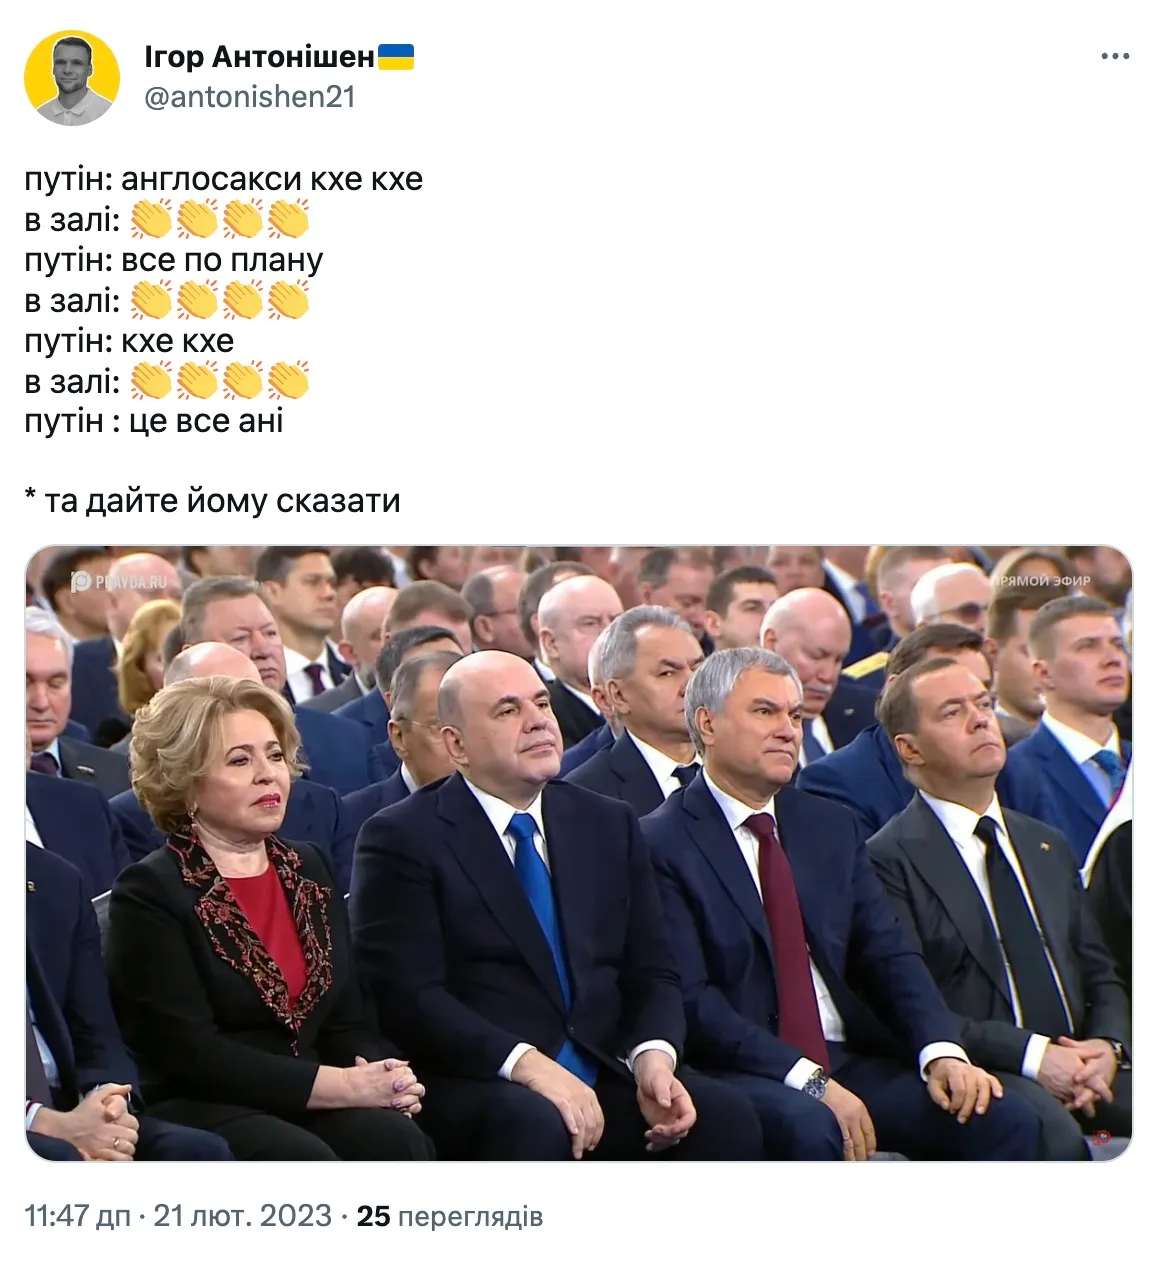 Путину аплодировали после каждого кхе-кхе